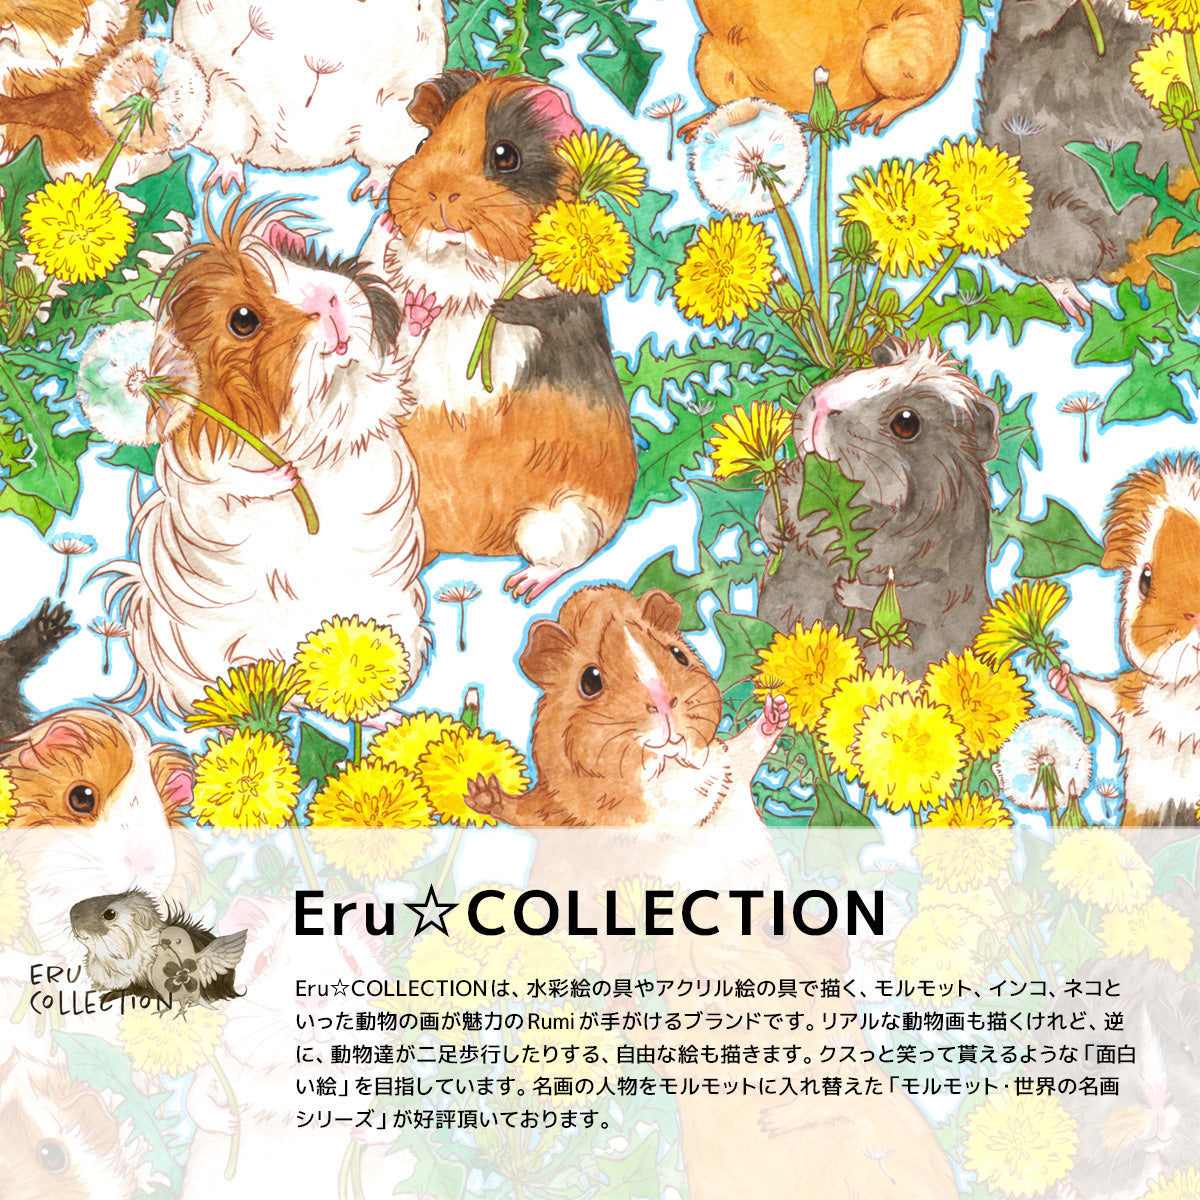 Rumiデザイン、ERu☆COLLECTIONブランドのiPadケース